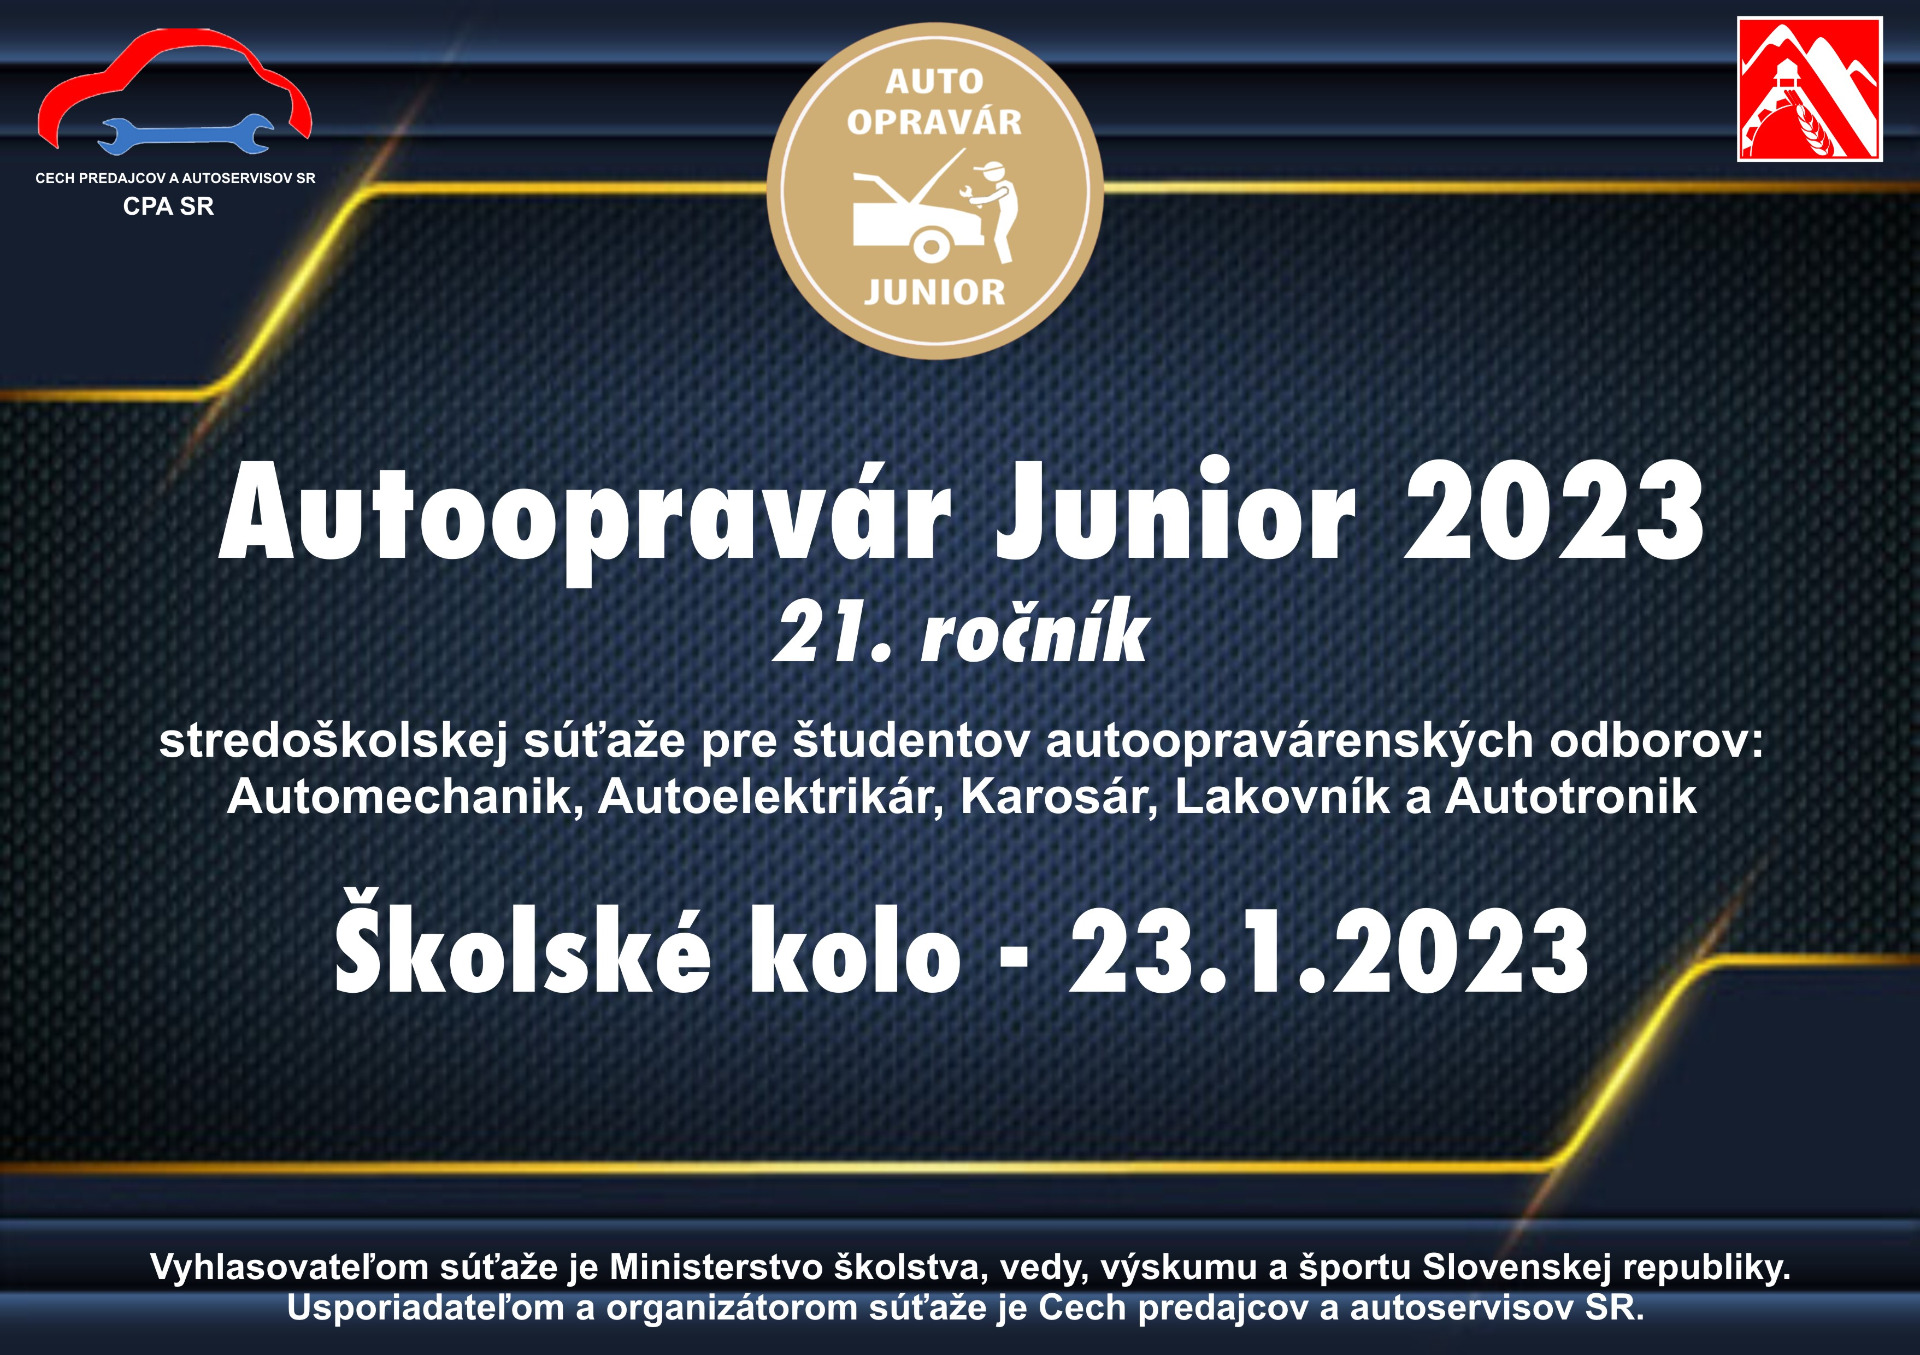 Autoopravár Junior 2023 - Obrázok 1